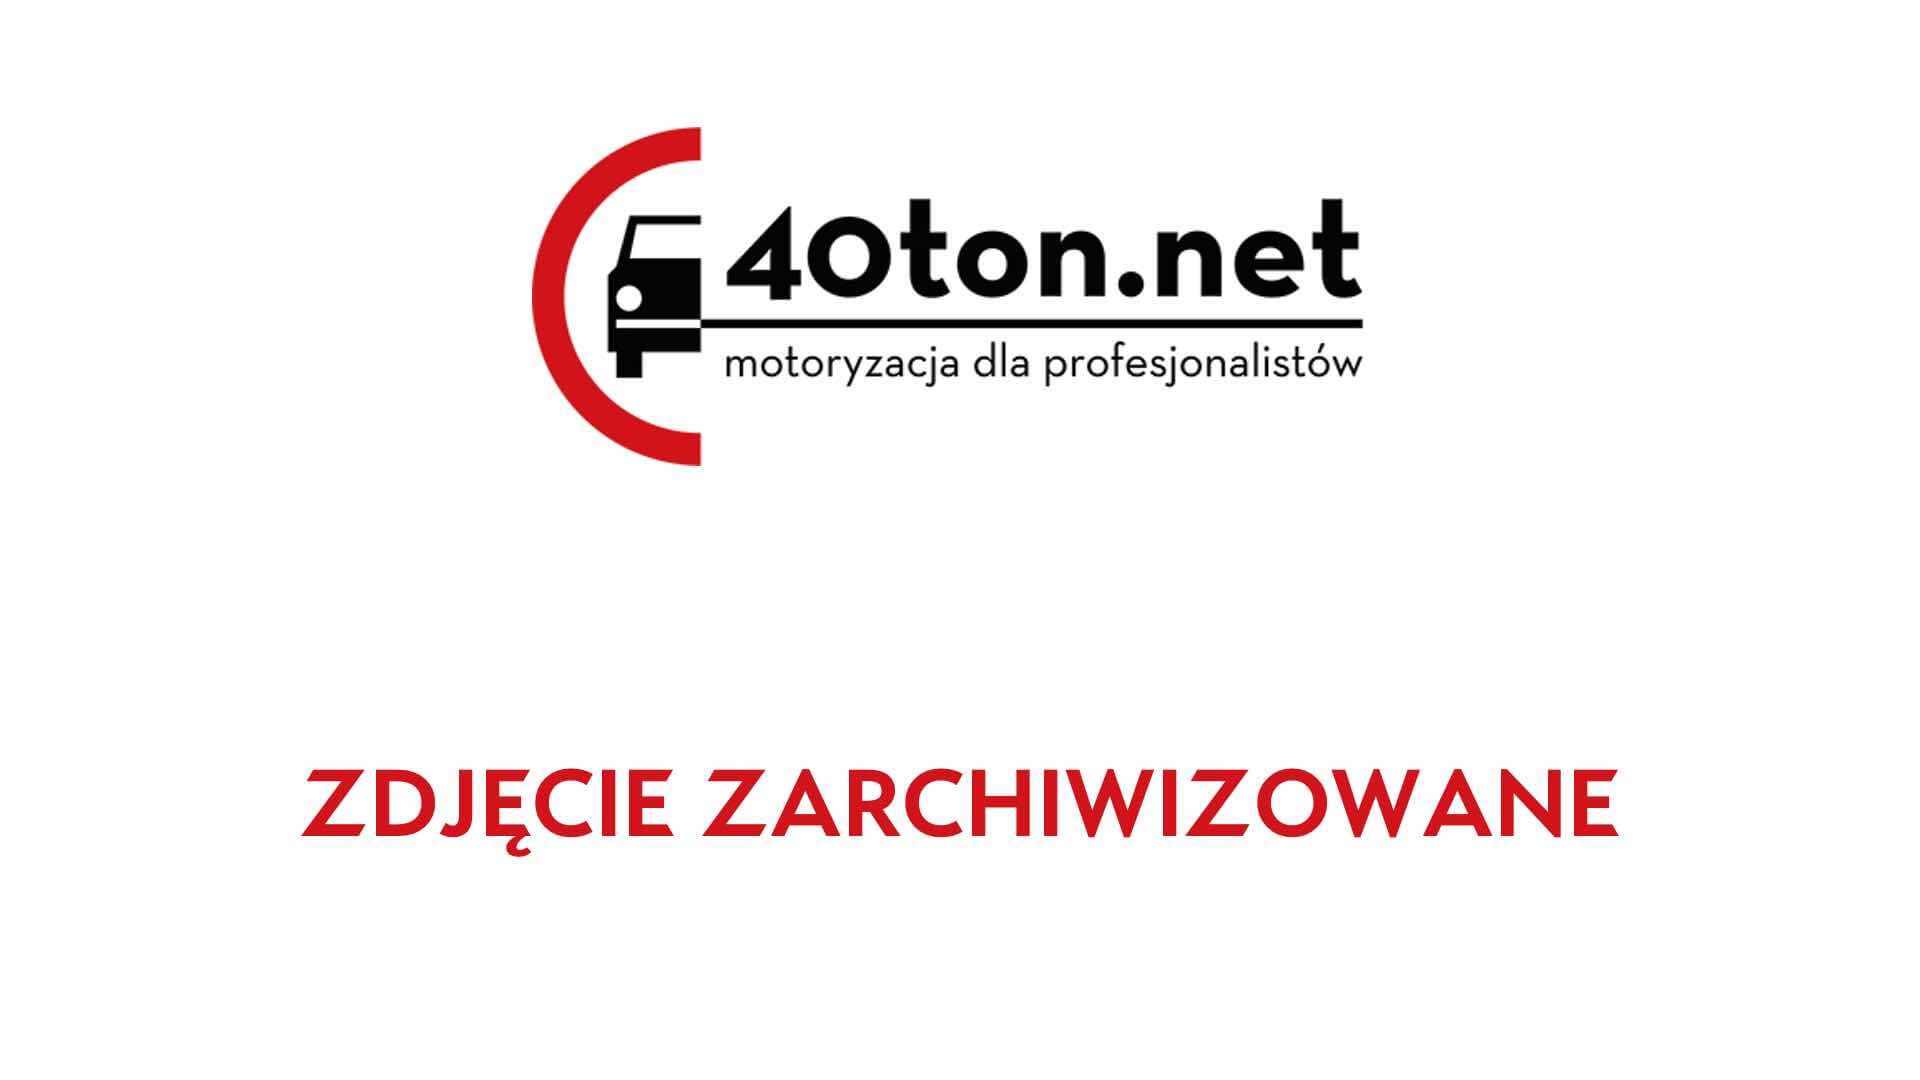 witd_poznan_daily_10_ton